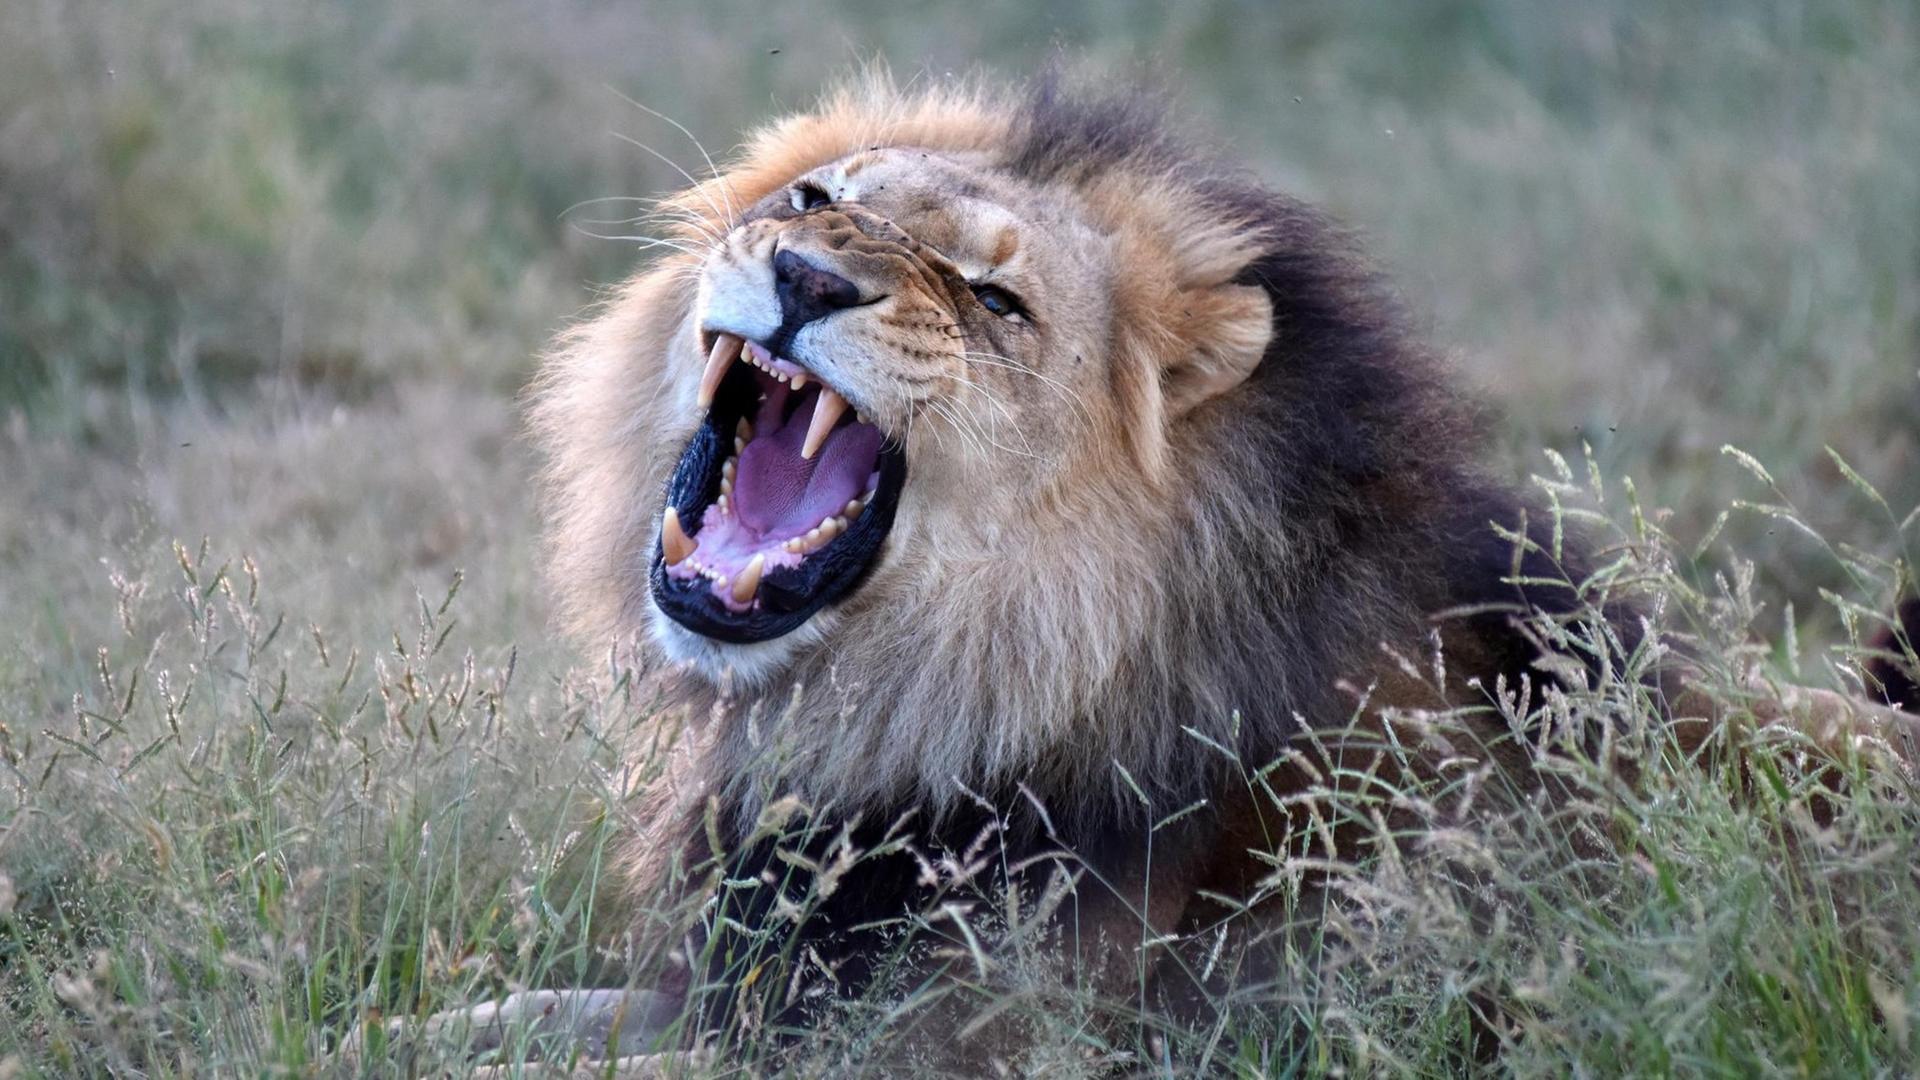 Laut brüllend zeigt dieser afrikanische Löwer sein Gebiß in der Harnass Wildlife Foundation.